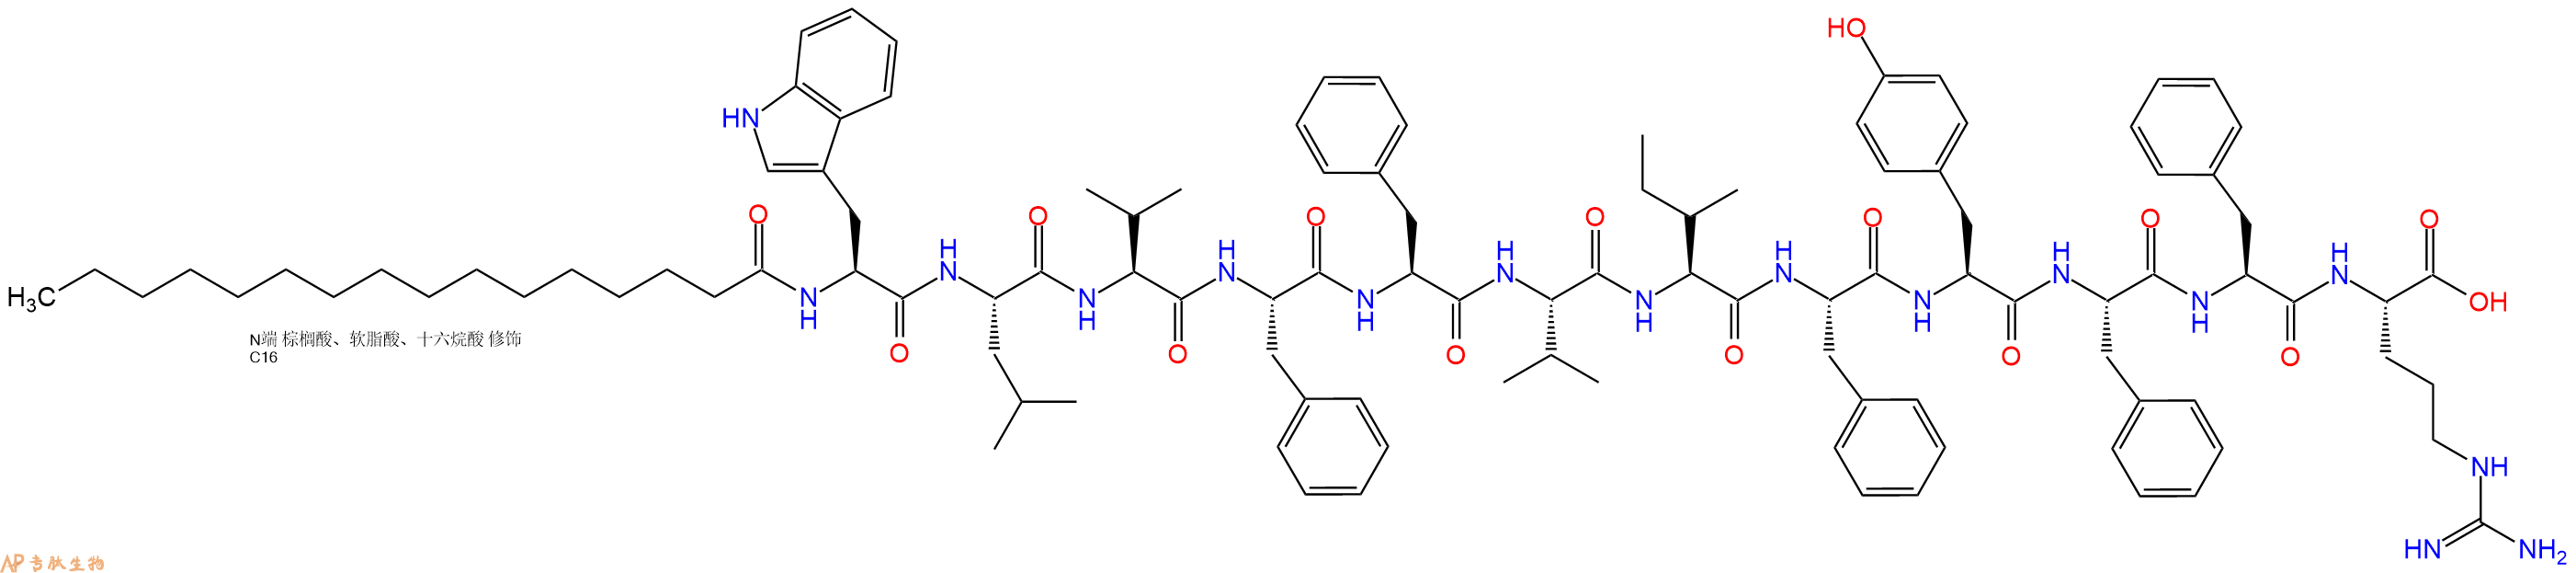 专肽生物产品Pal-Trp-Leu-Val-Phe-Phe-Val-Ile-Phe-Tyr-Phe-Phe-Ar